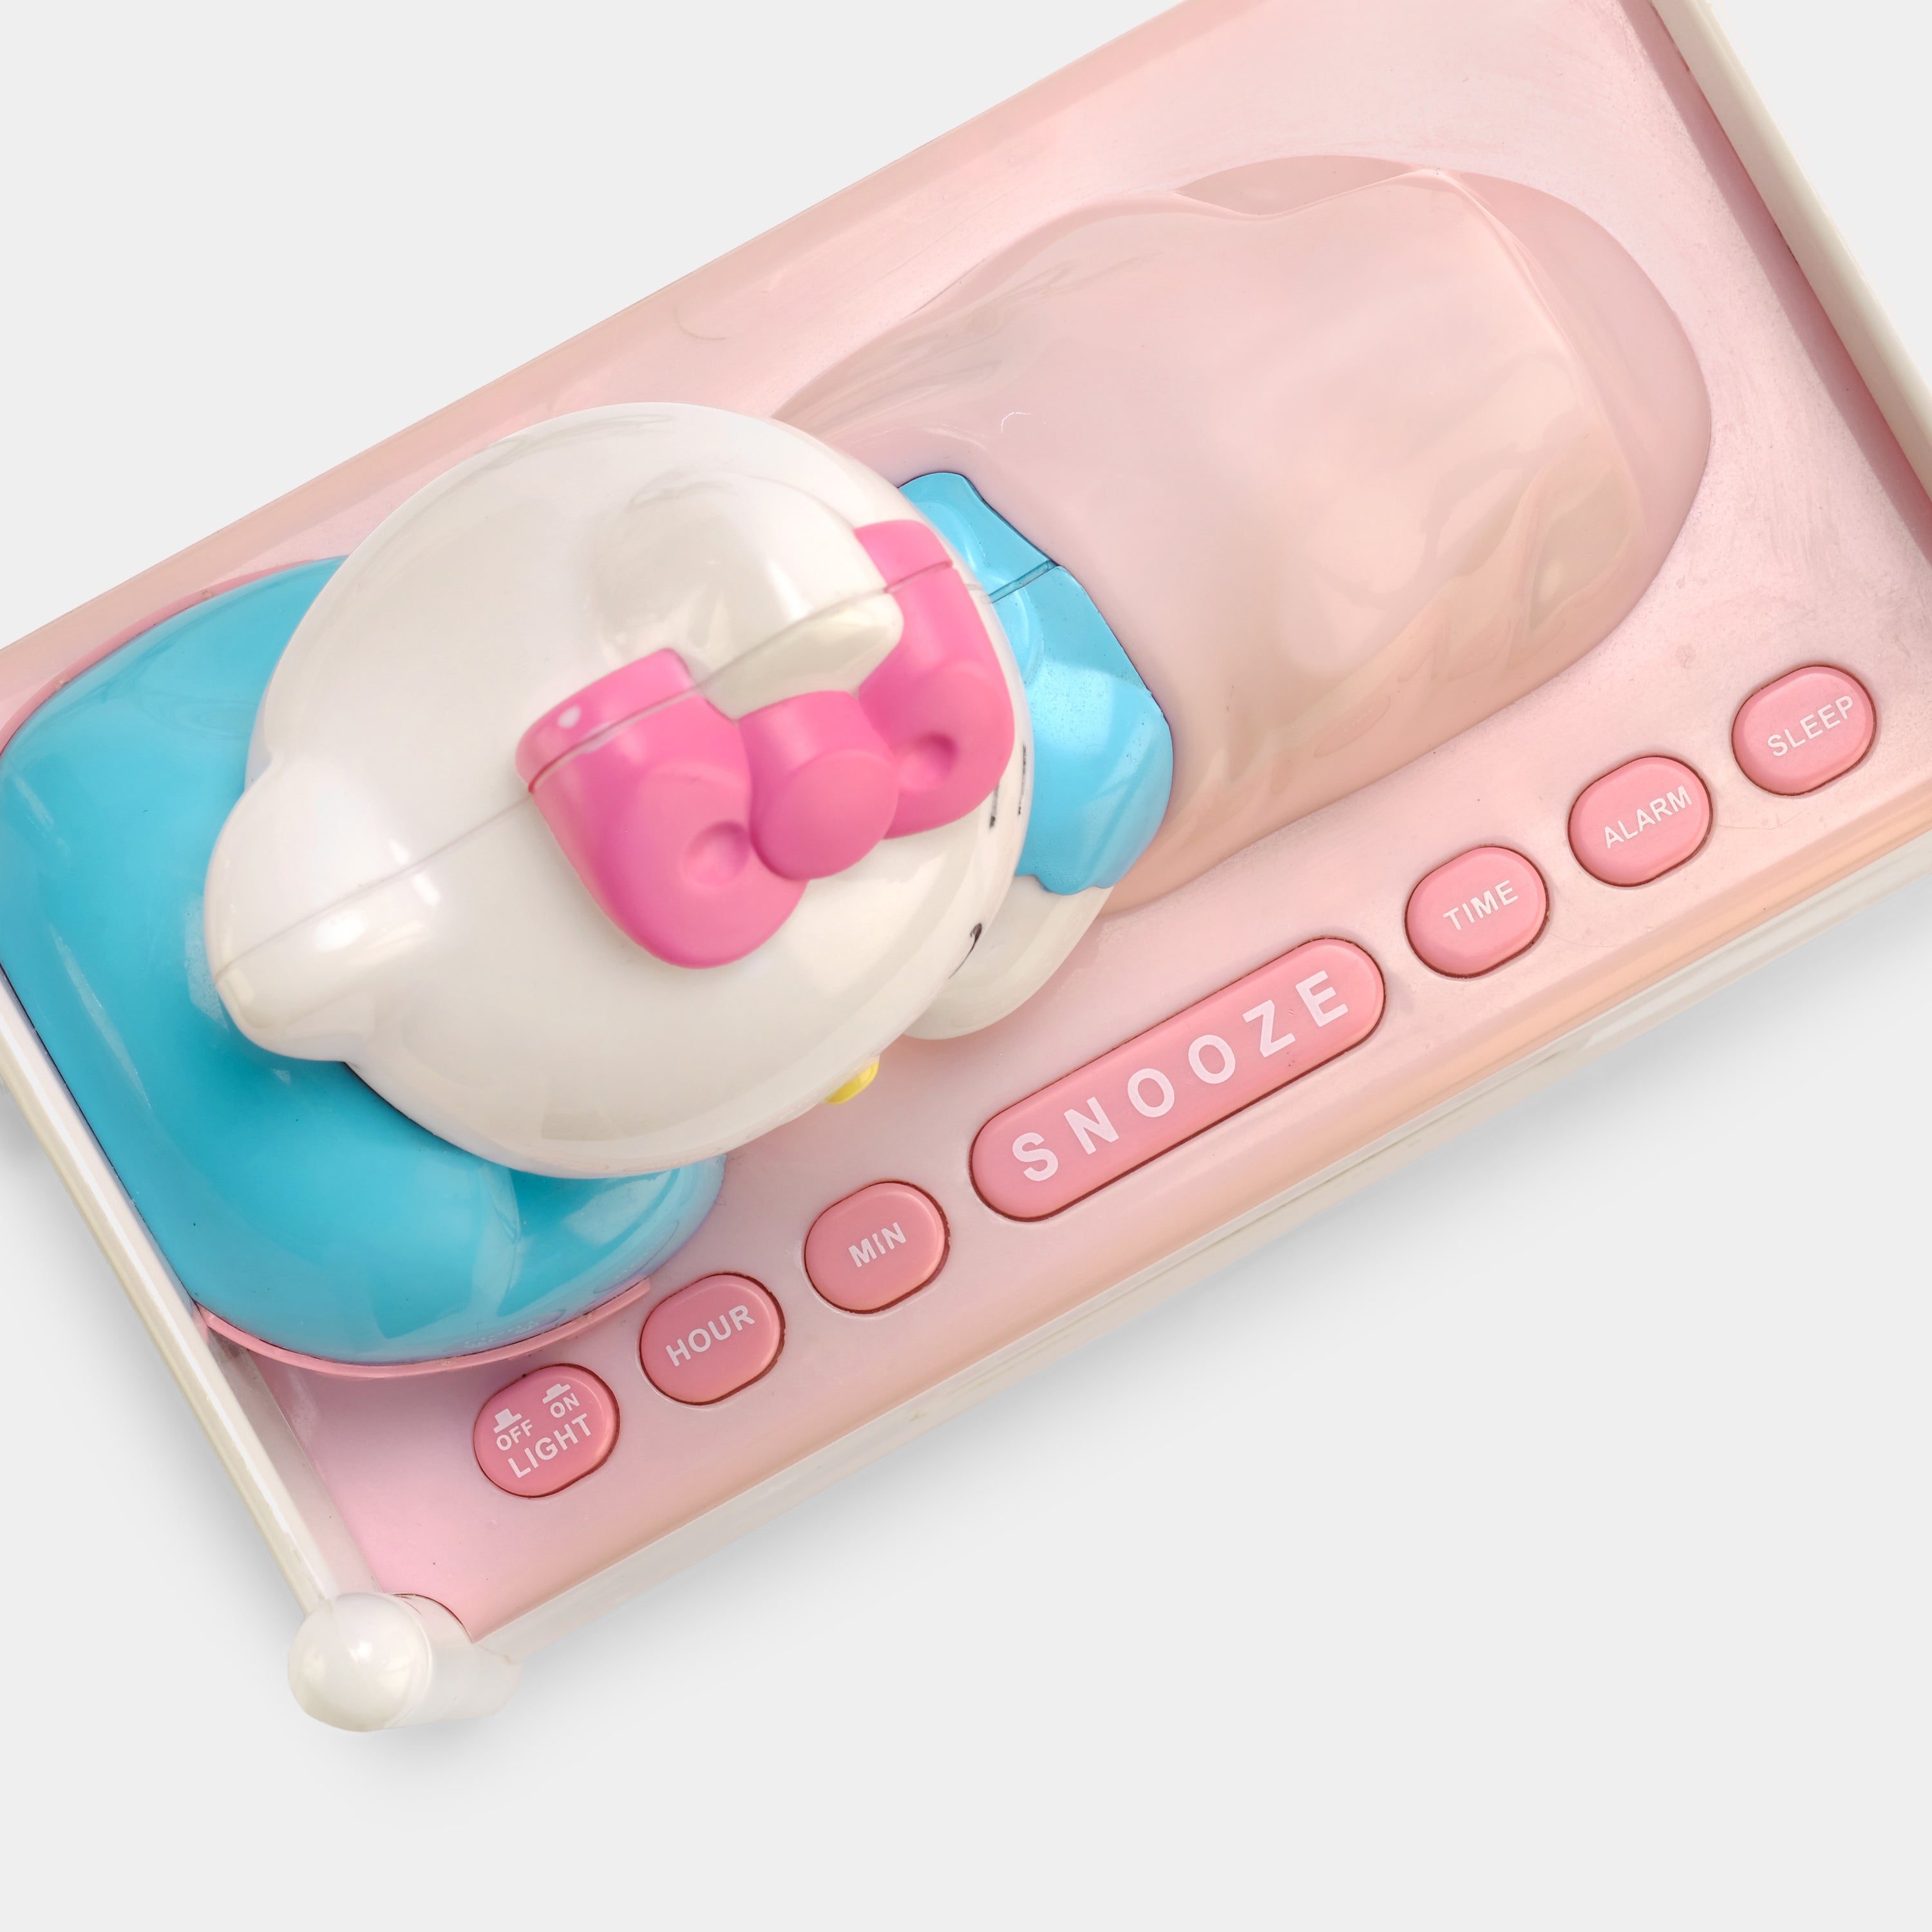 Hello Kitty KT2052 Sleeping Kitty Alarm Clock Radio